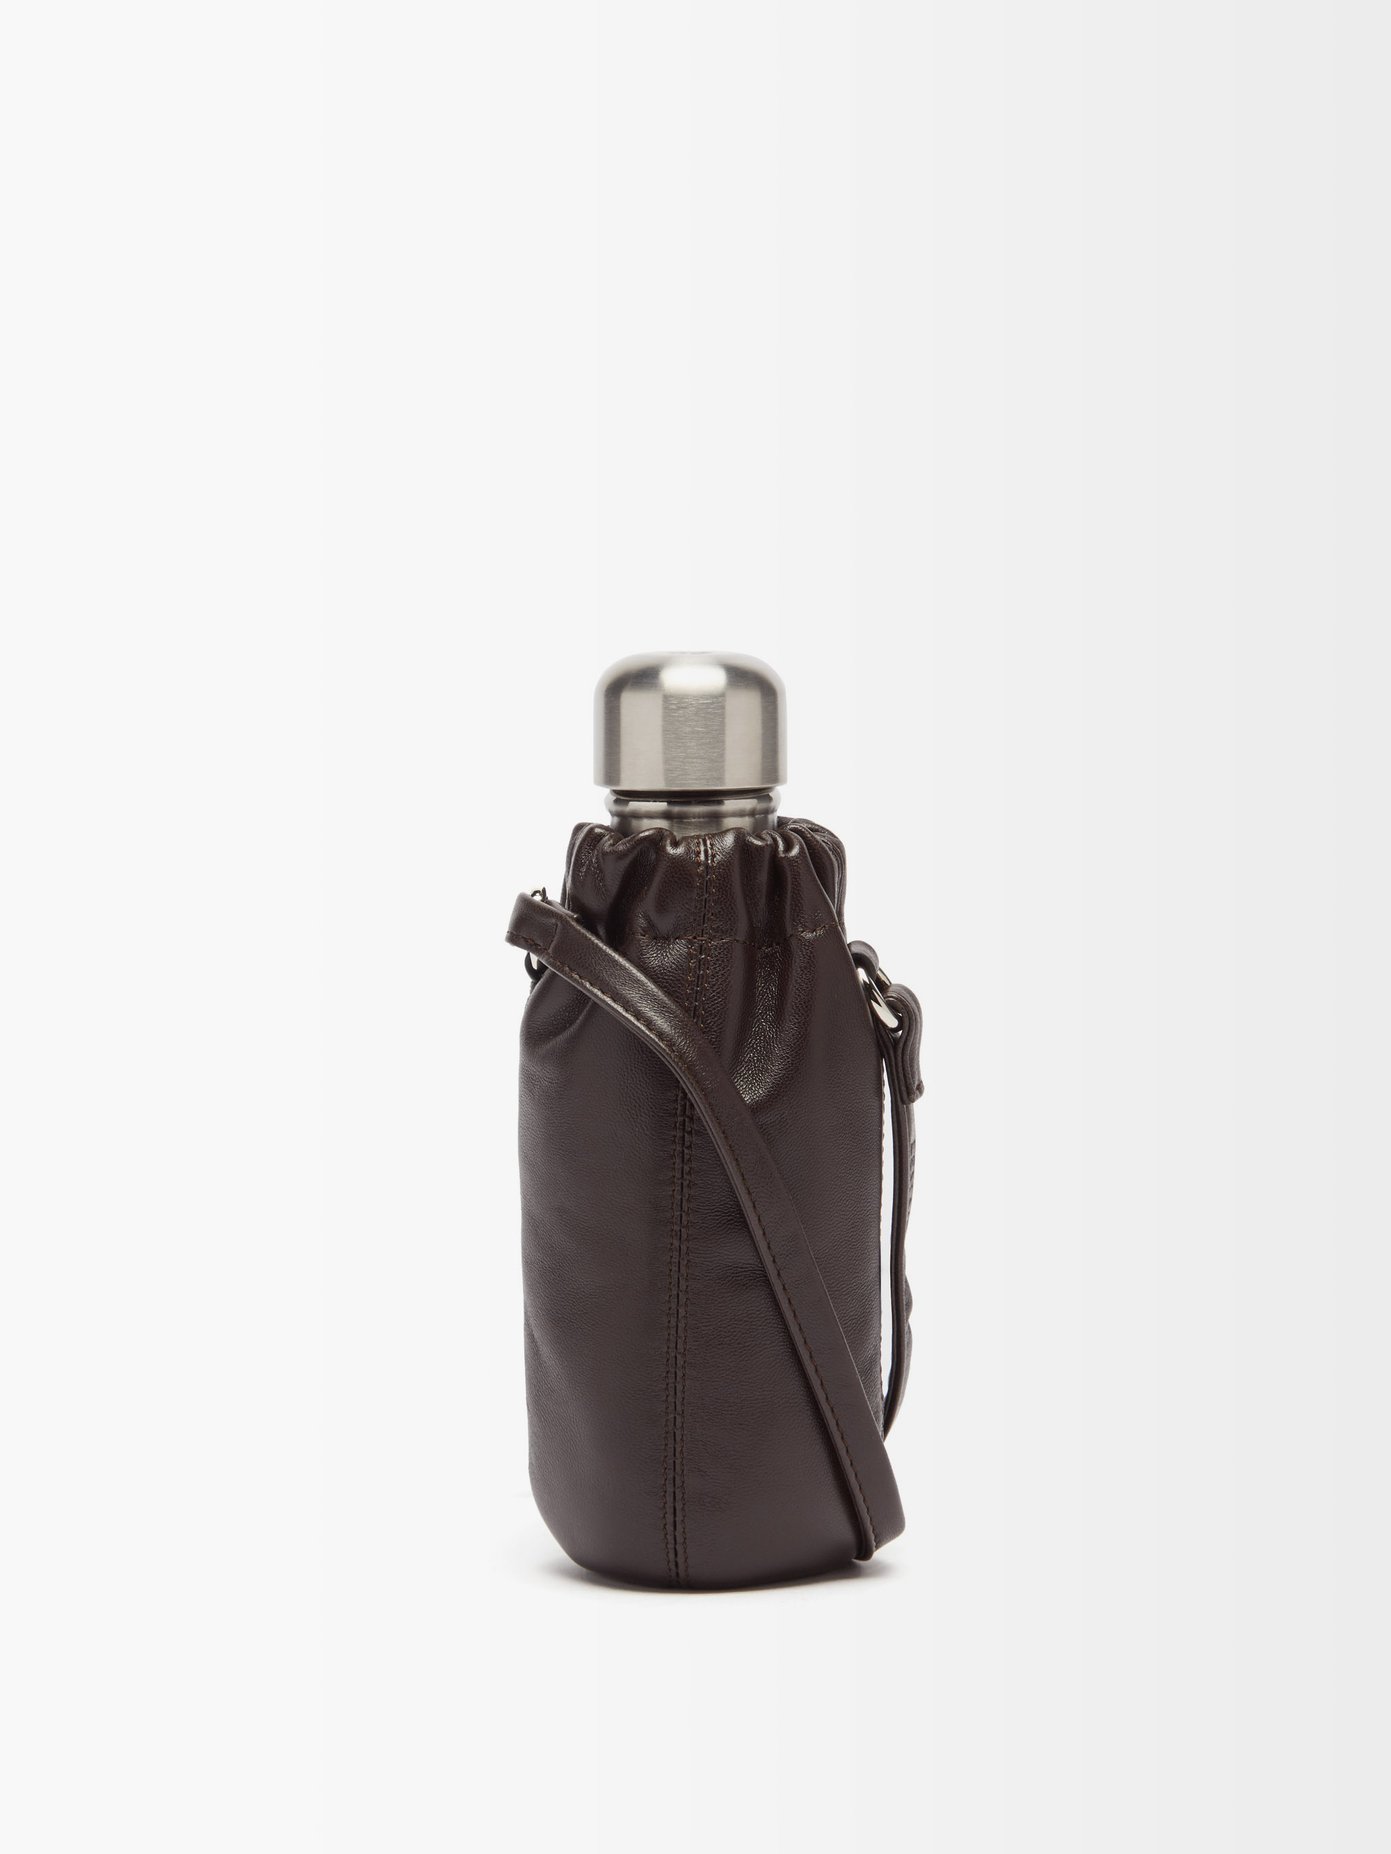 르메르 Lemaire Brown Water bottle and leather holder